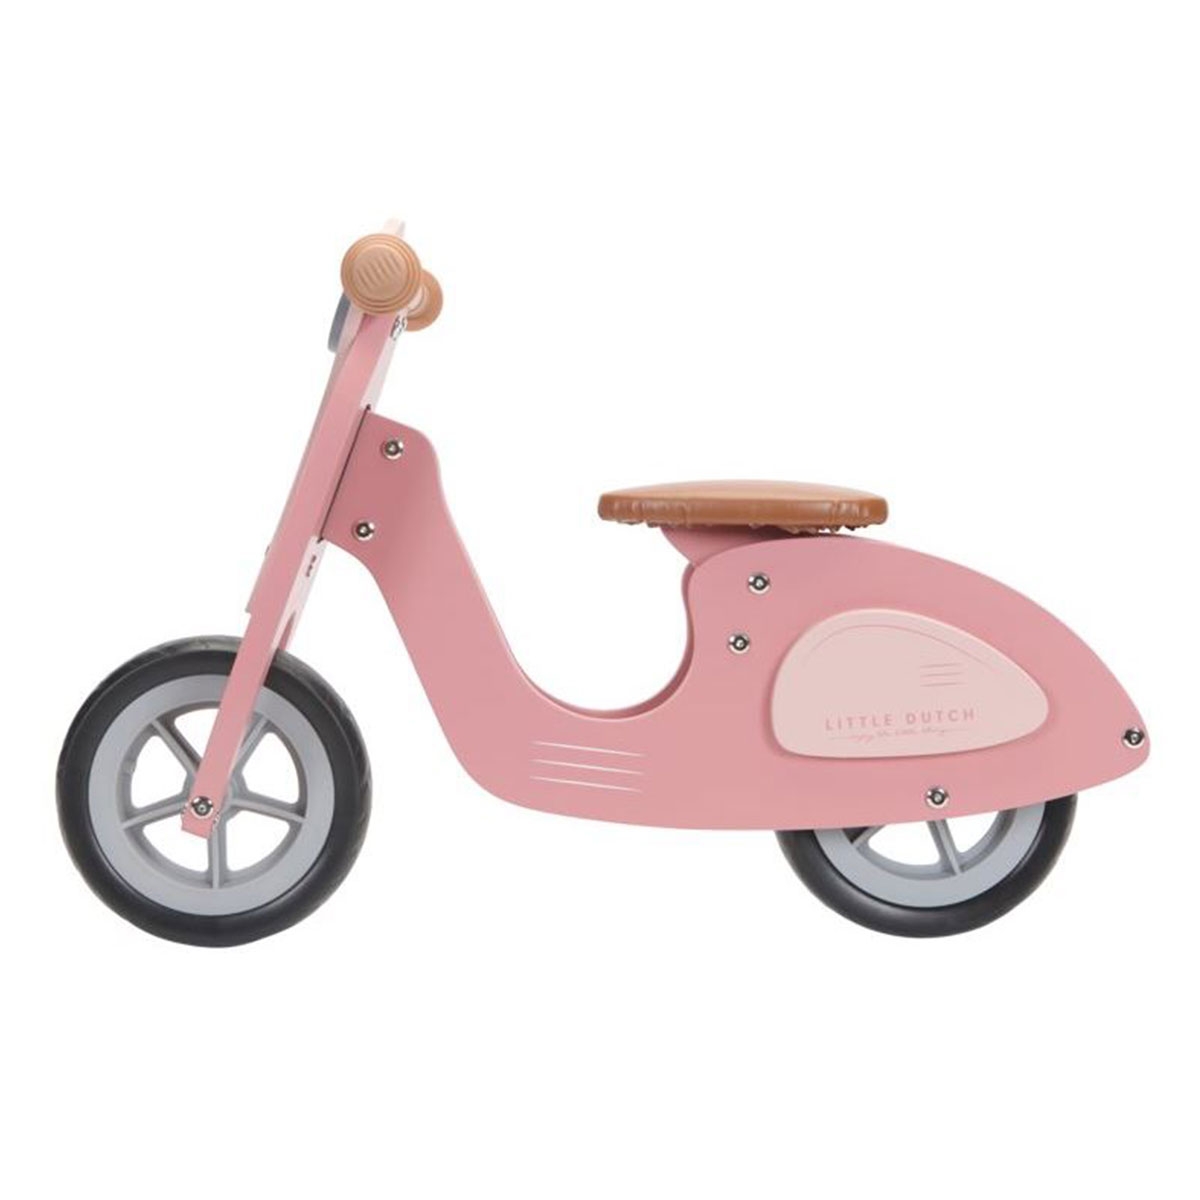 Holz-Laufrad ,,Scooter” rosa von vertbaudet Laufräder